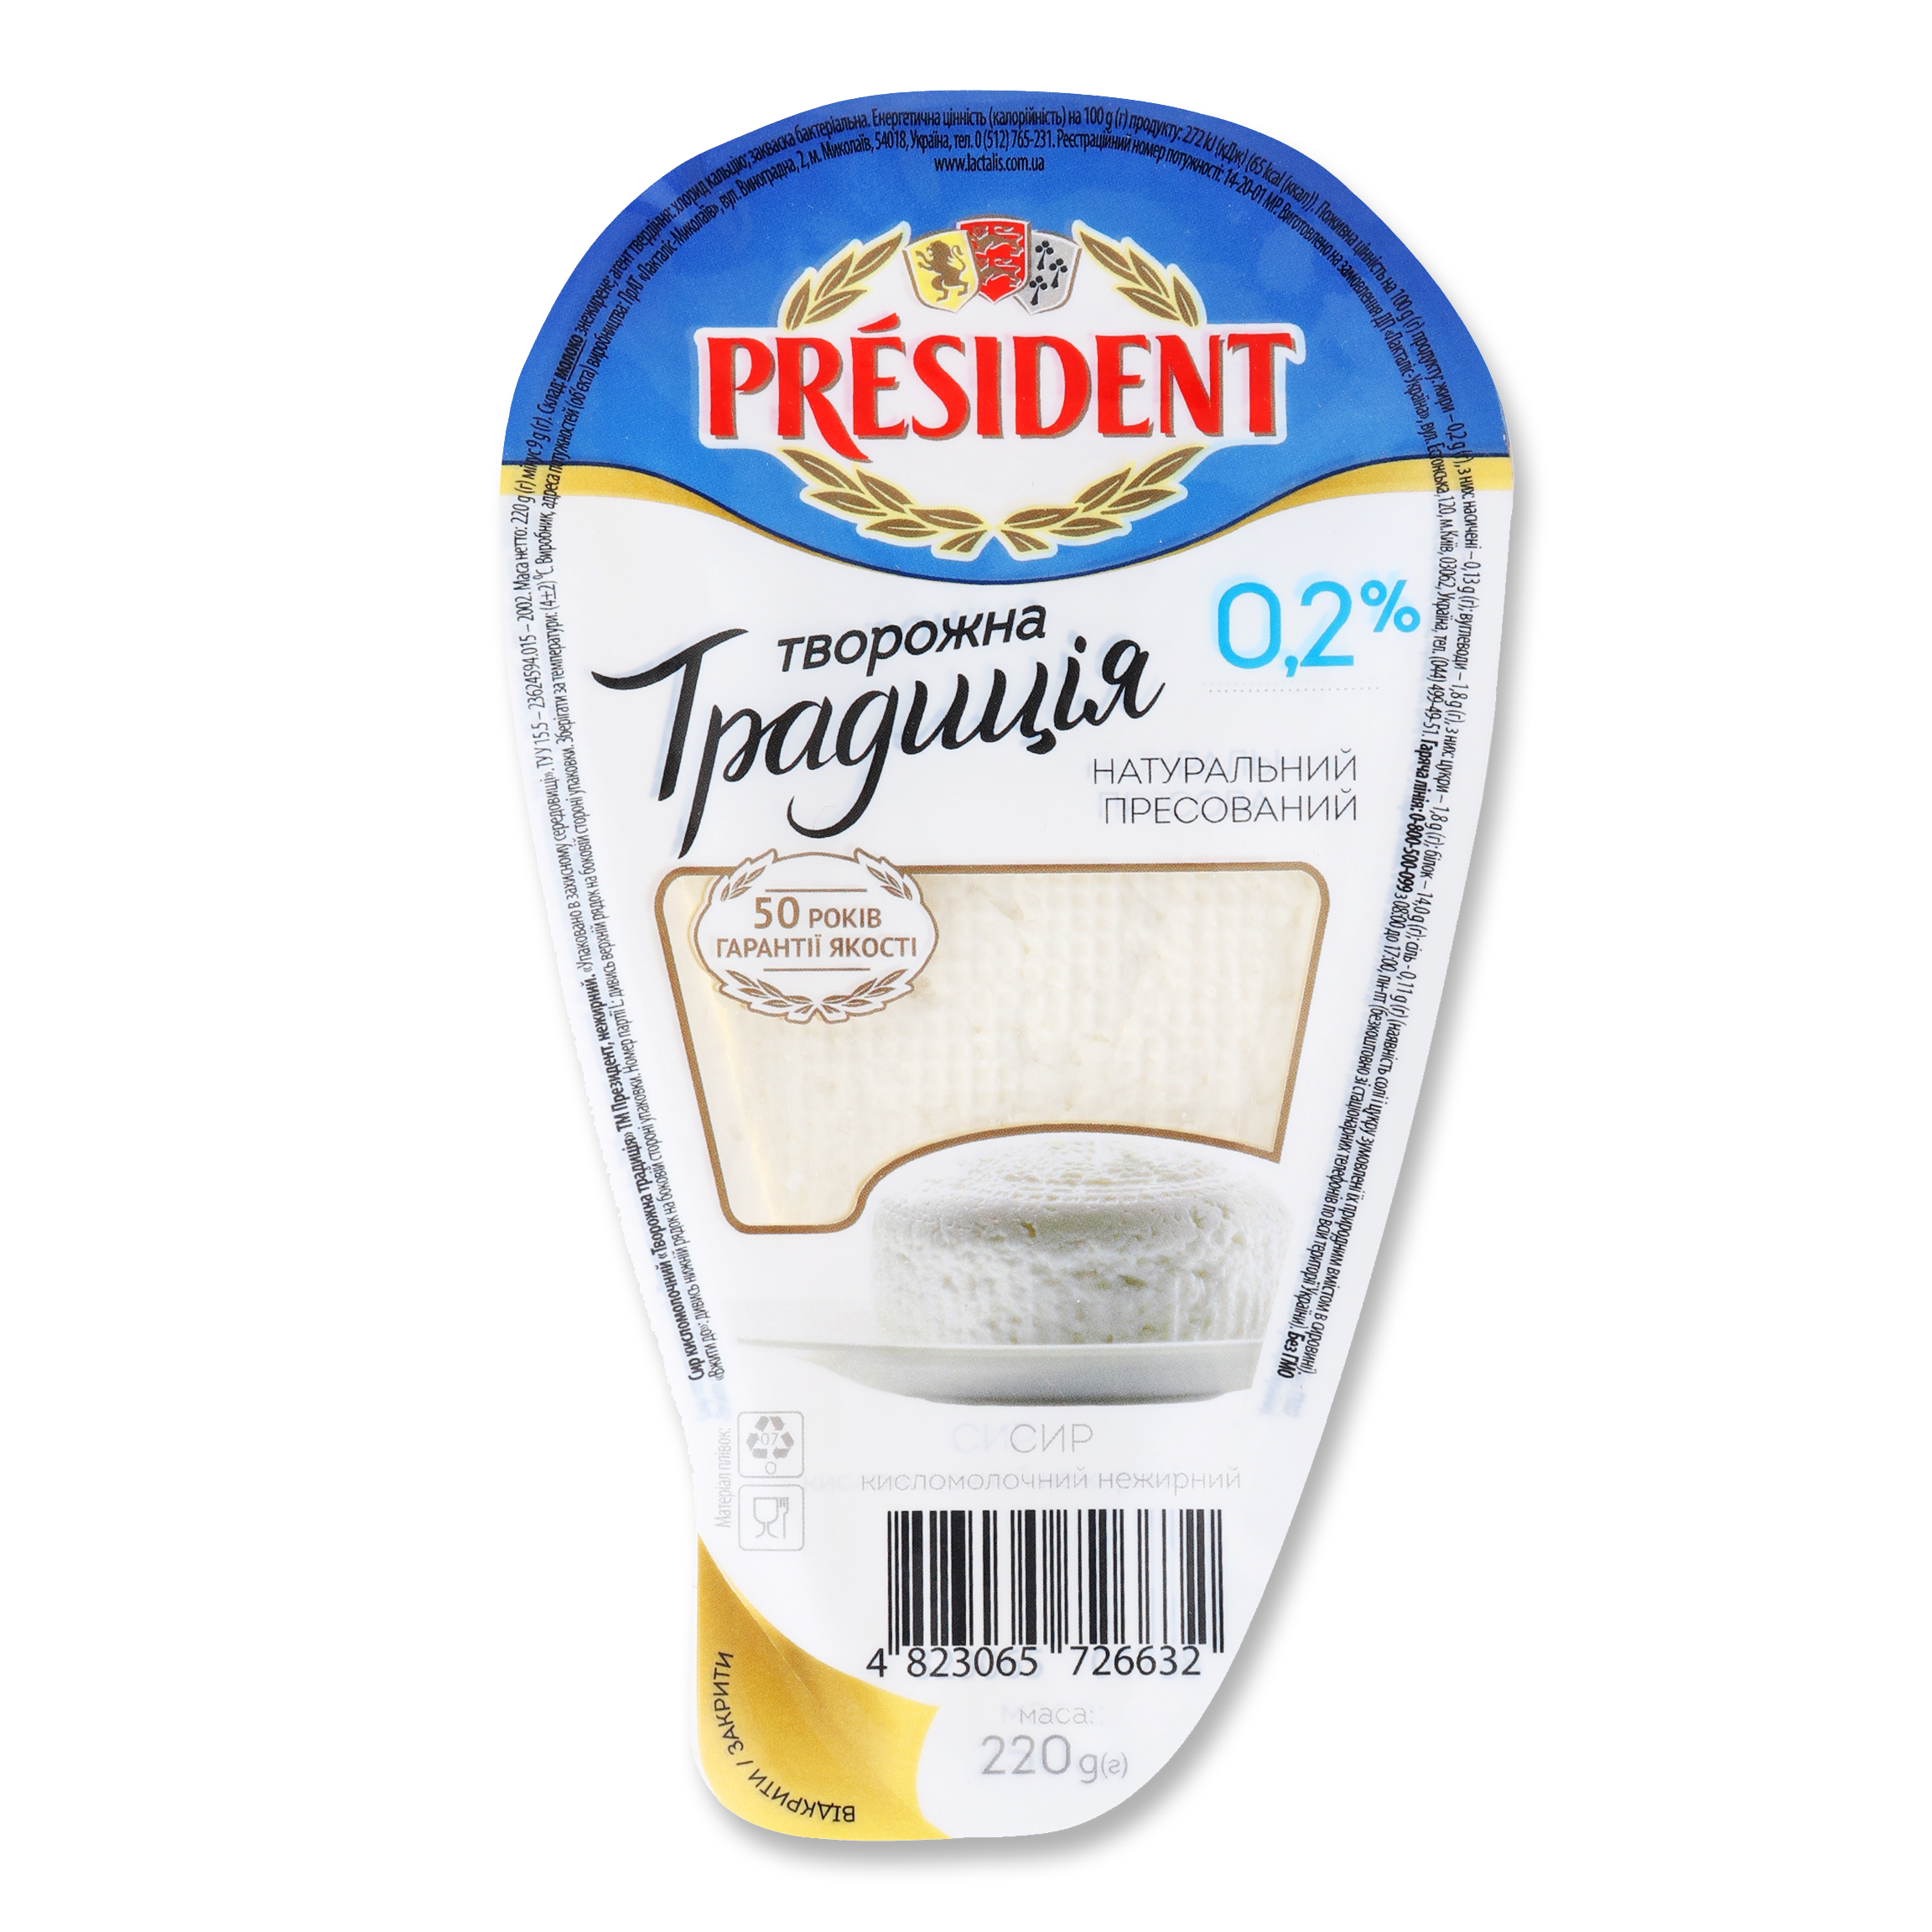 Сыр кисломолочный President Творожная традиция 0,2% 220г